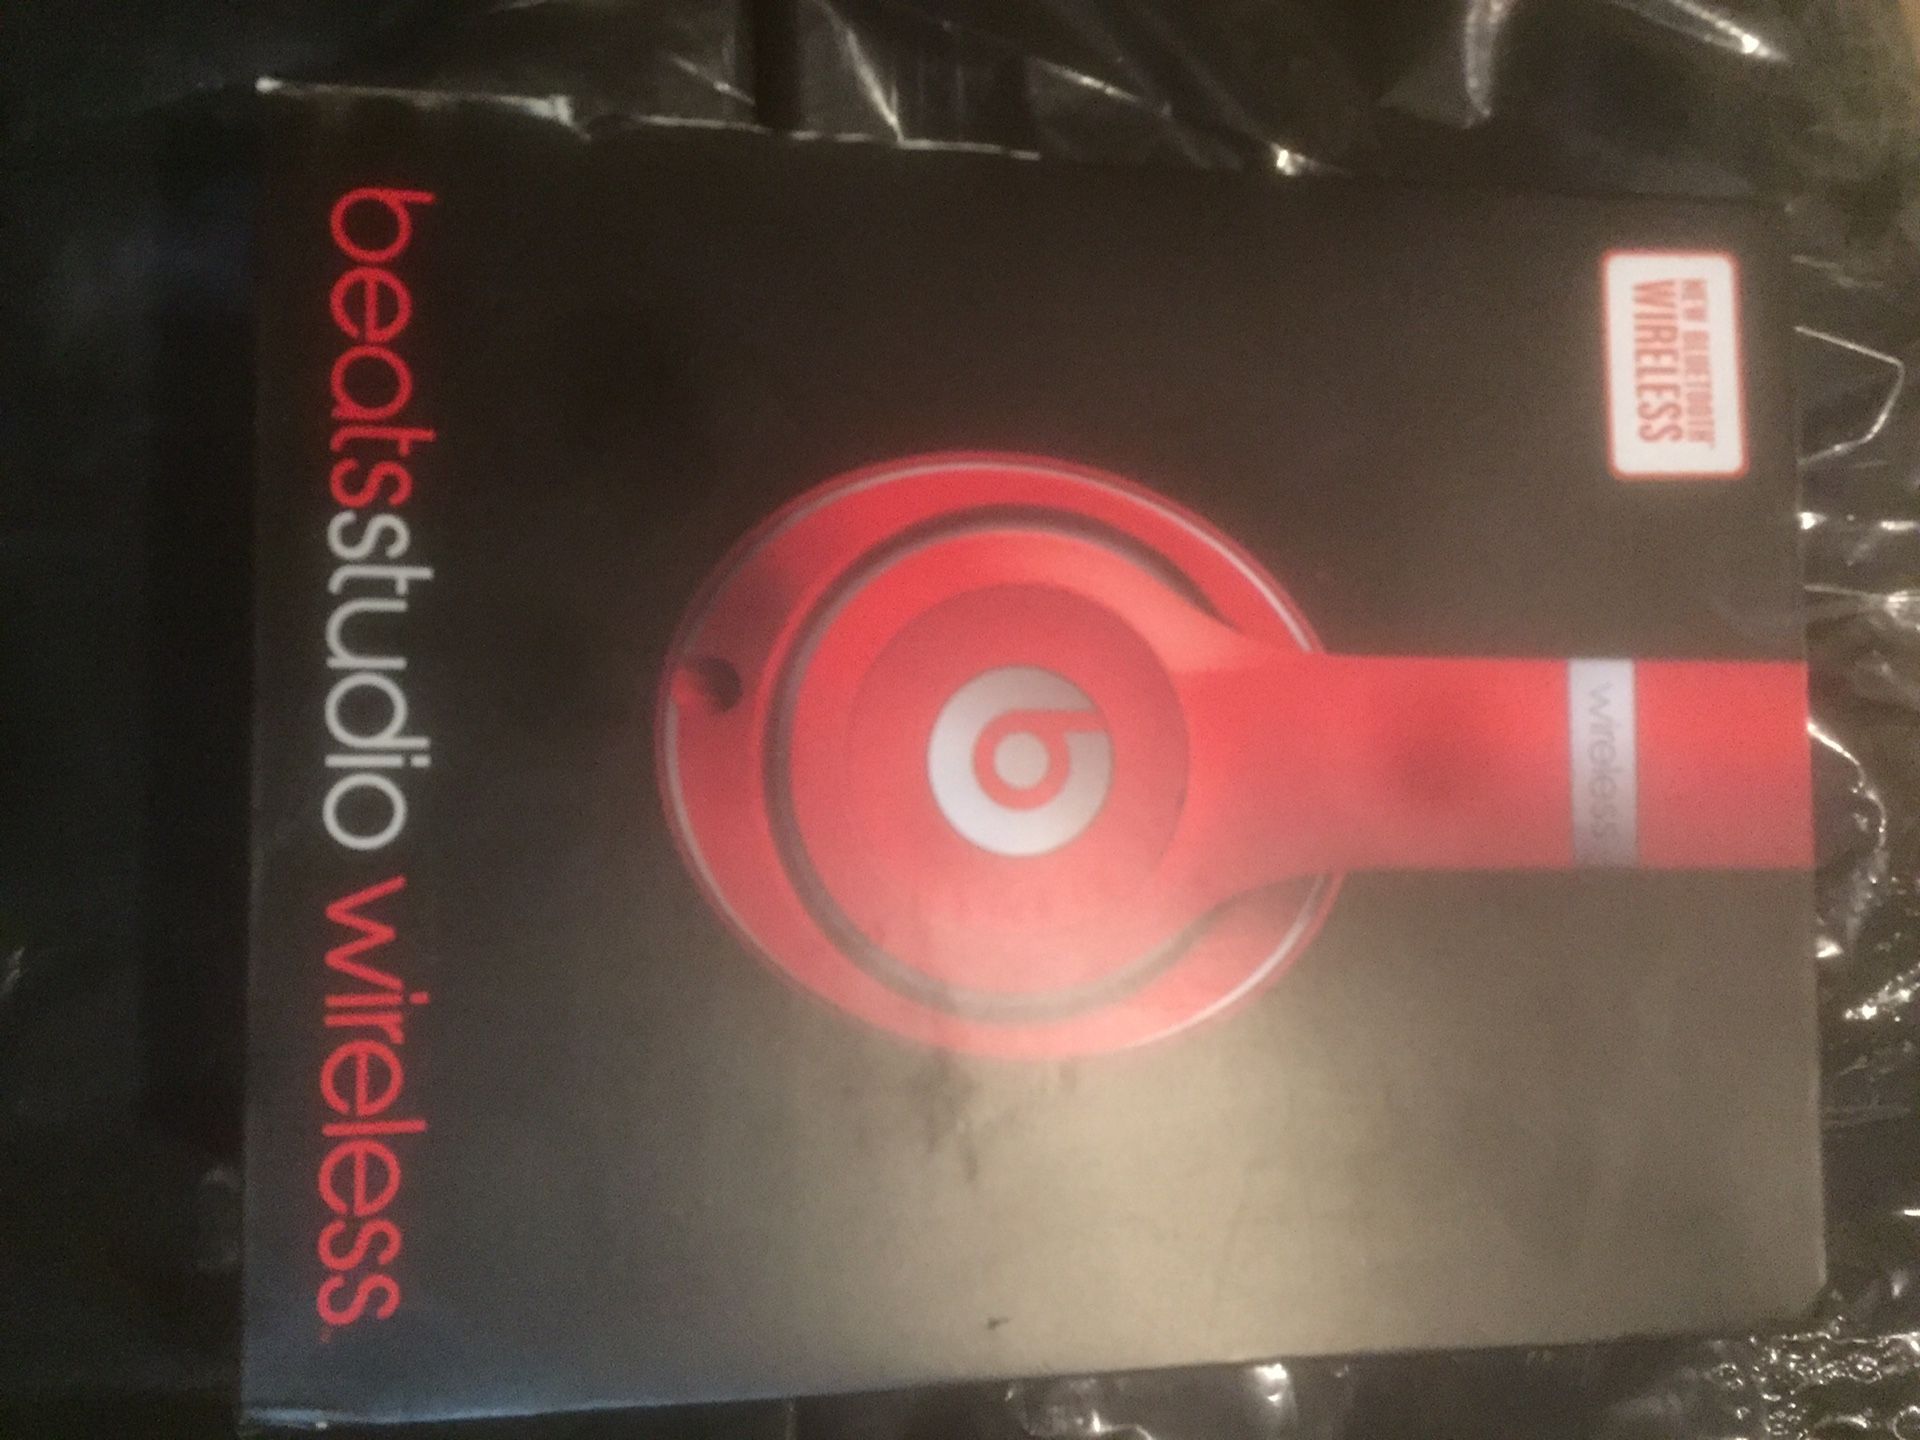 Beats headphones $120